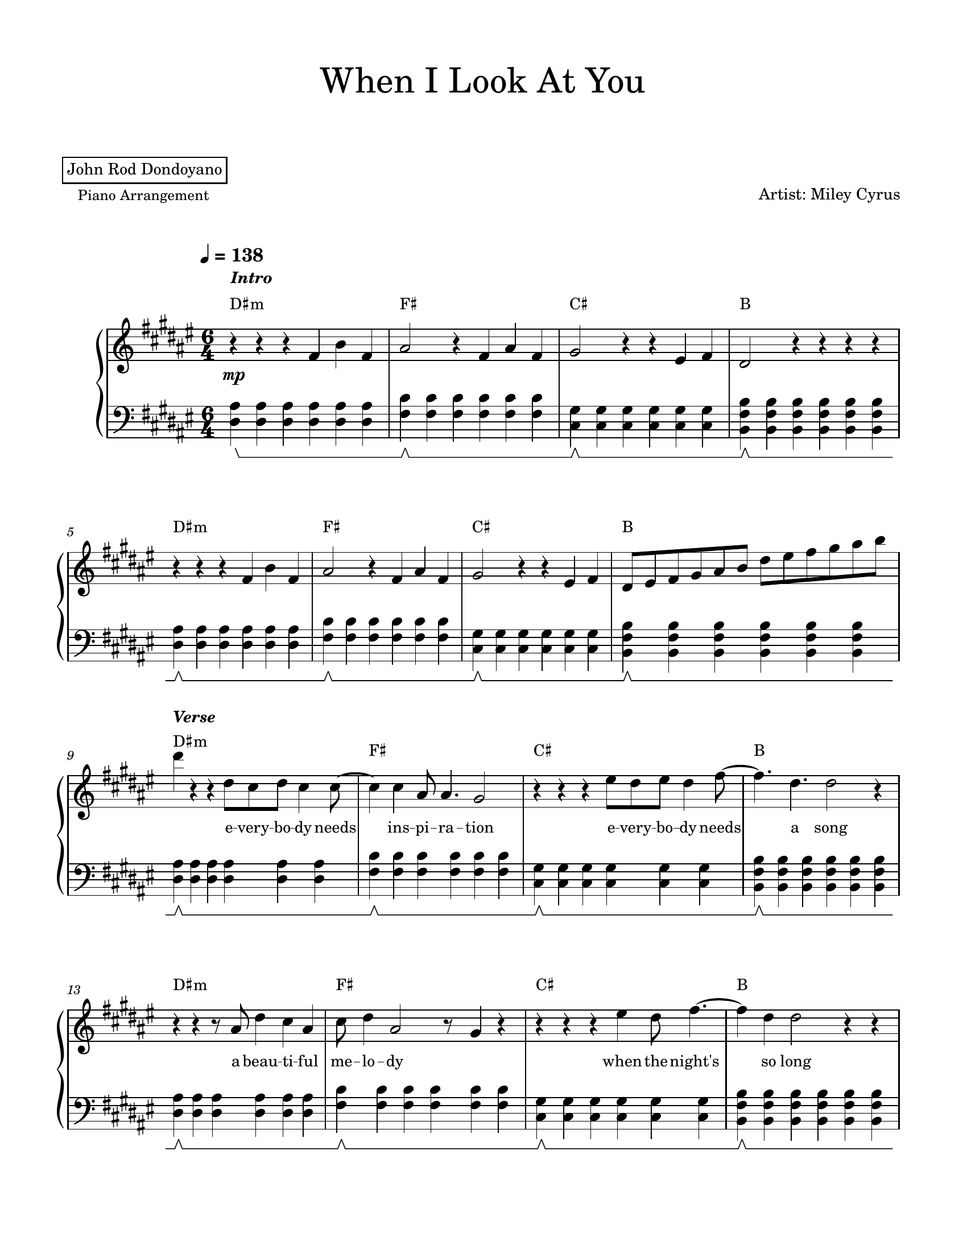 Miley Cyrus - When I Look At You (PIANO SHEET) by John Rod Dondoyano